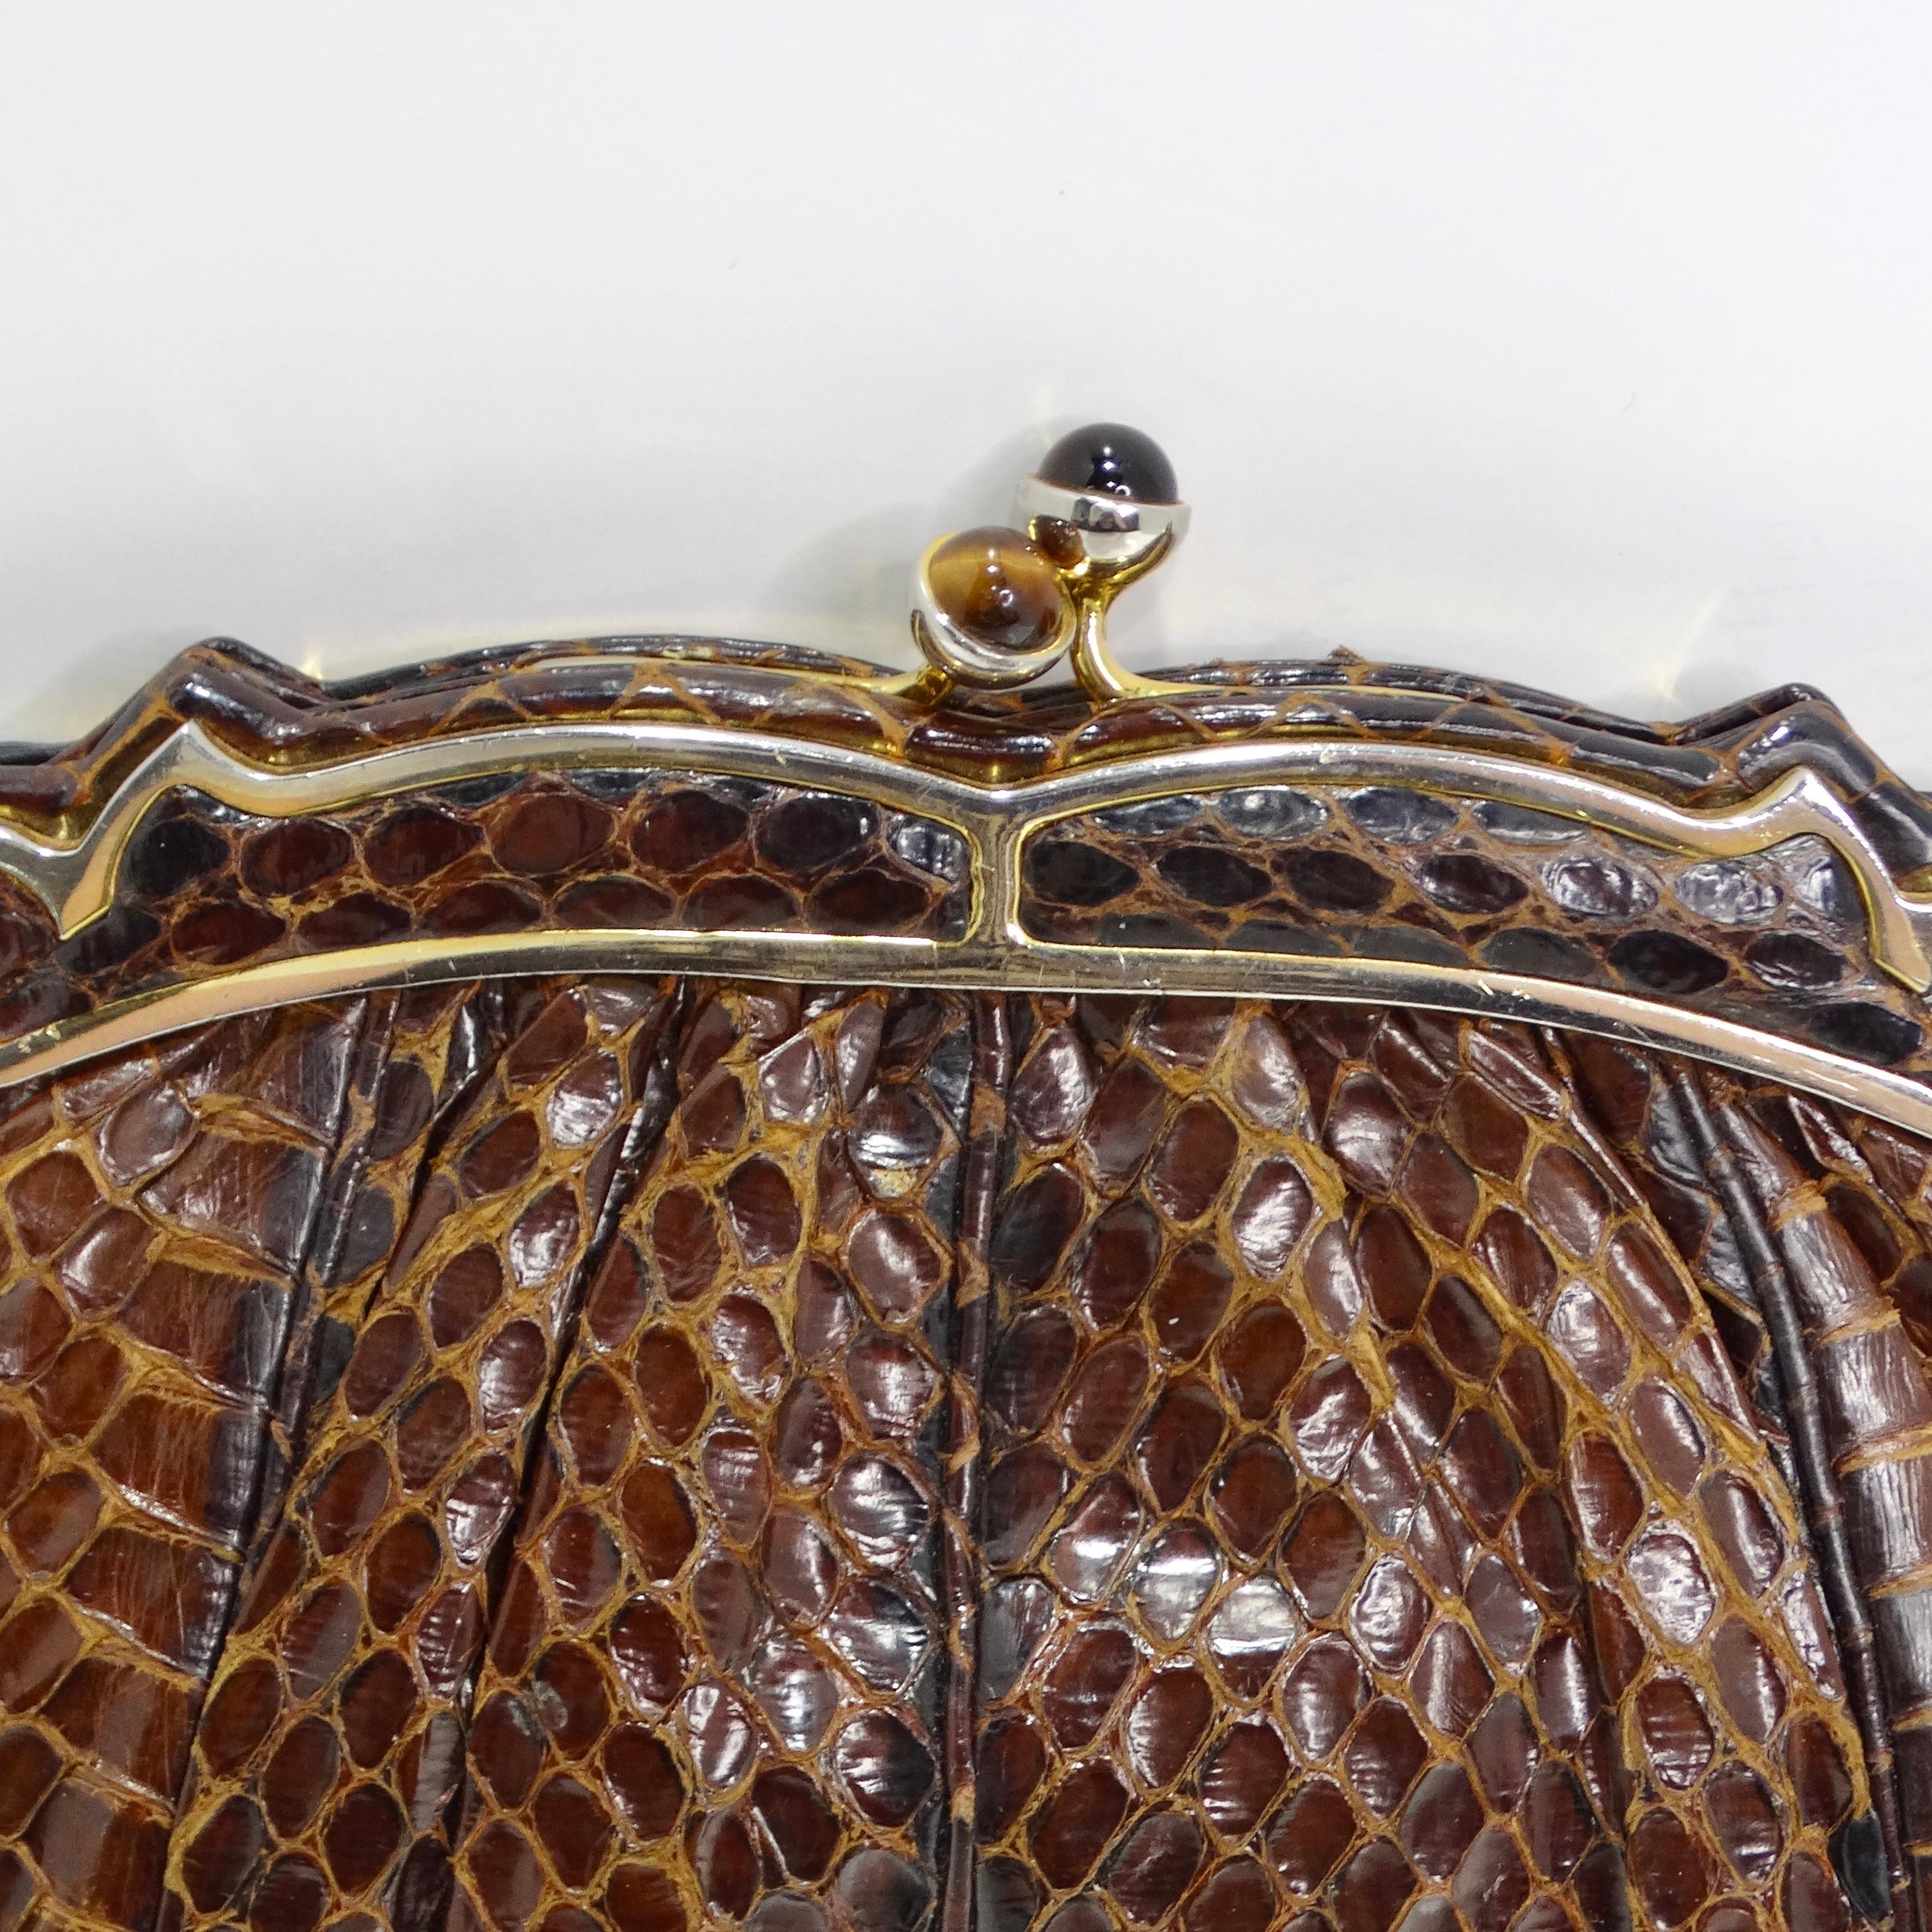 Voici l'exquise pochette Judith Leiber gaufrée en peau de serpent marron des années 1980, un accessoire luxueux et intemporel qui respire la sophistication et le glamour. Confectionnée en cuir gaufré peau de serpent marron de haute qualité, cette